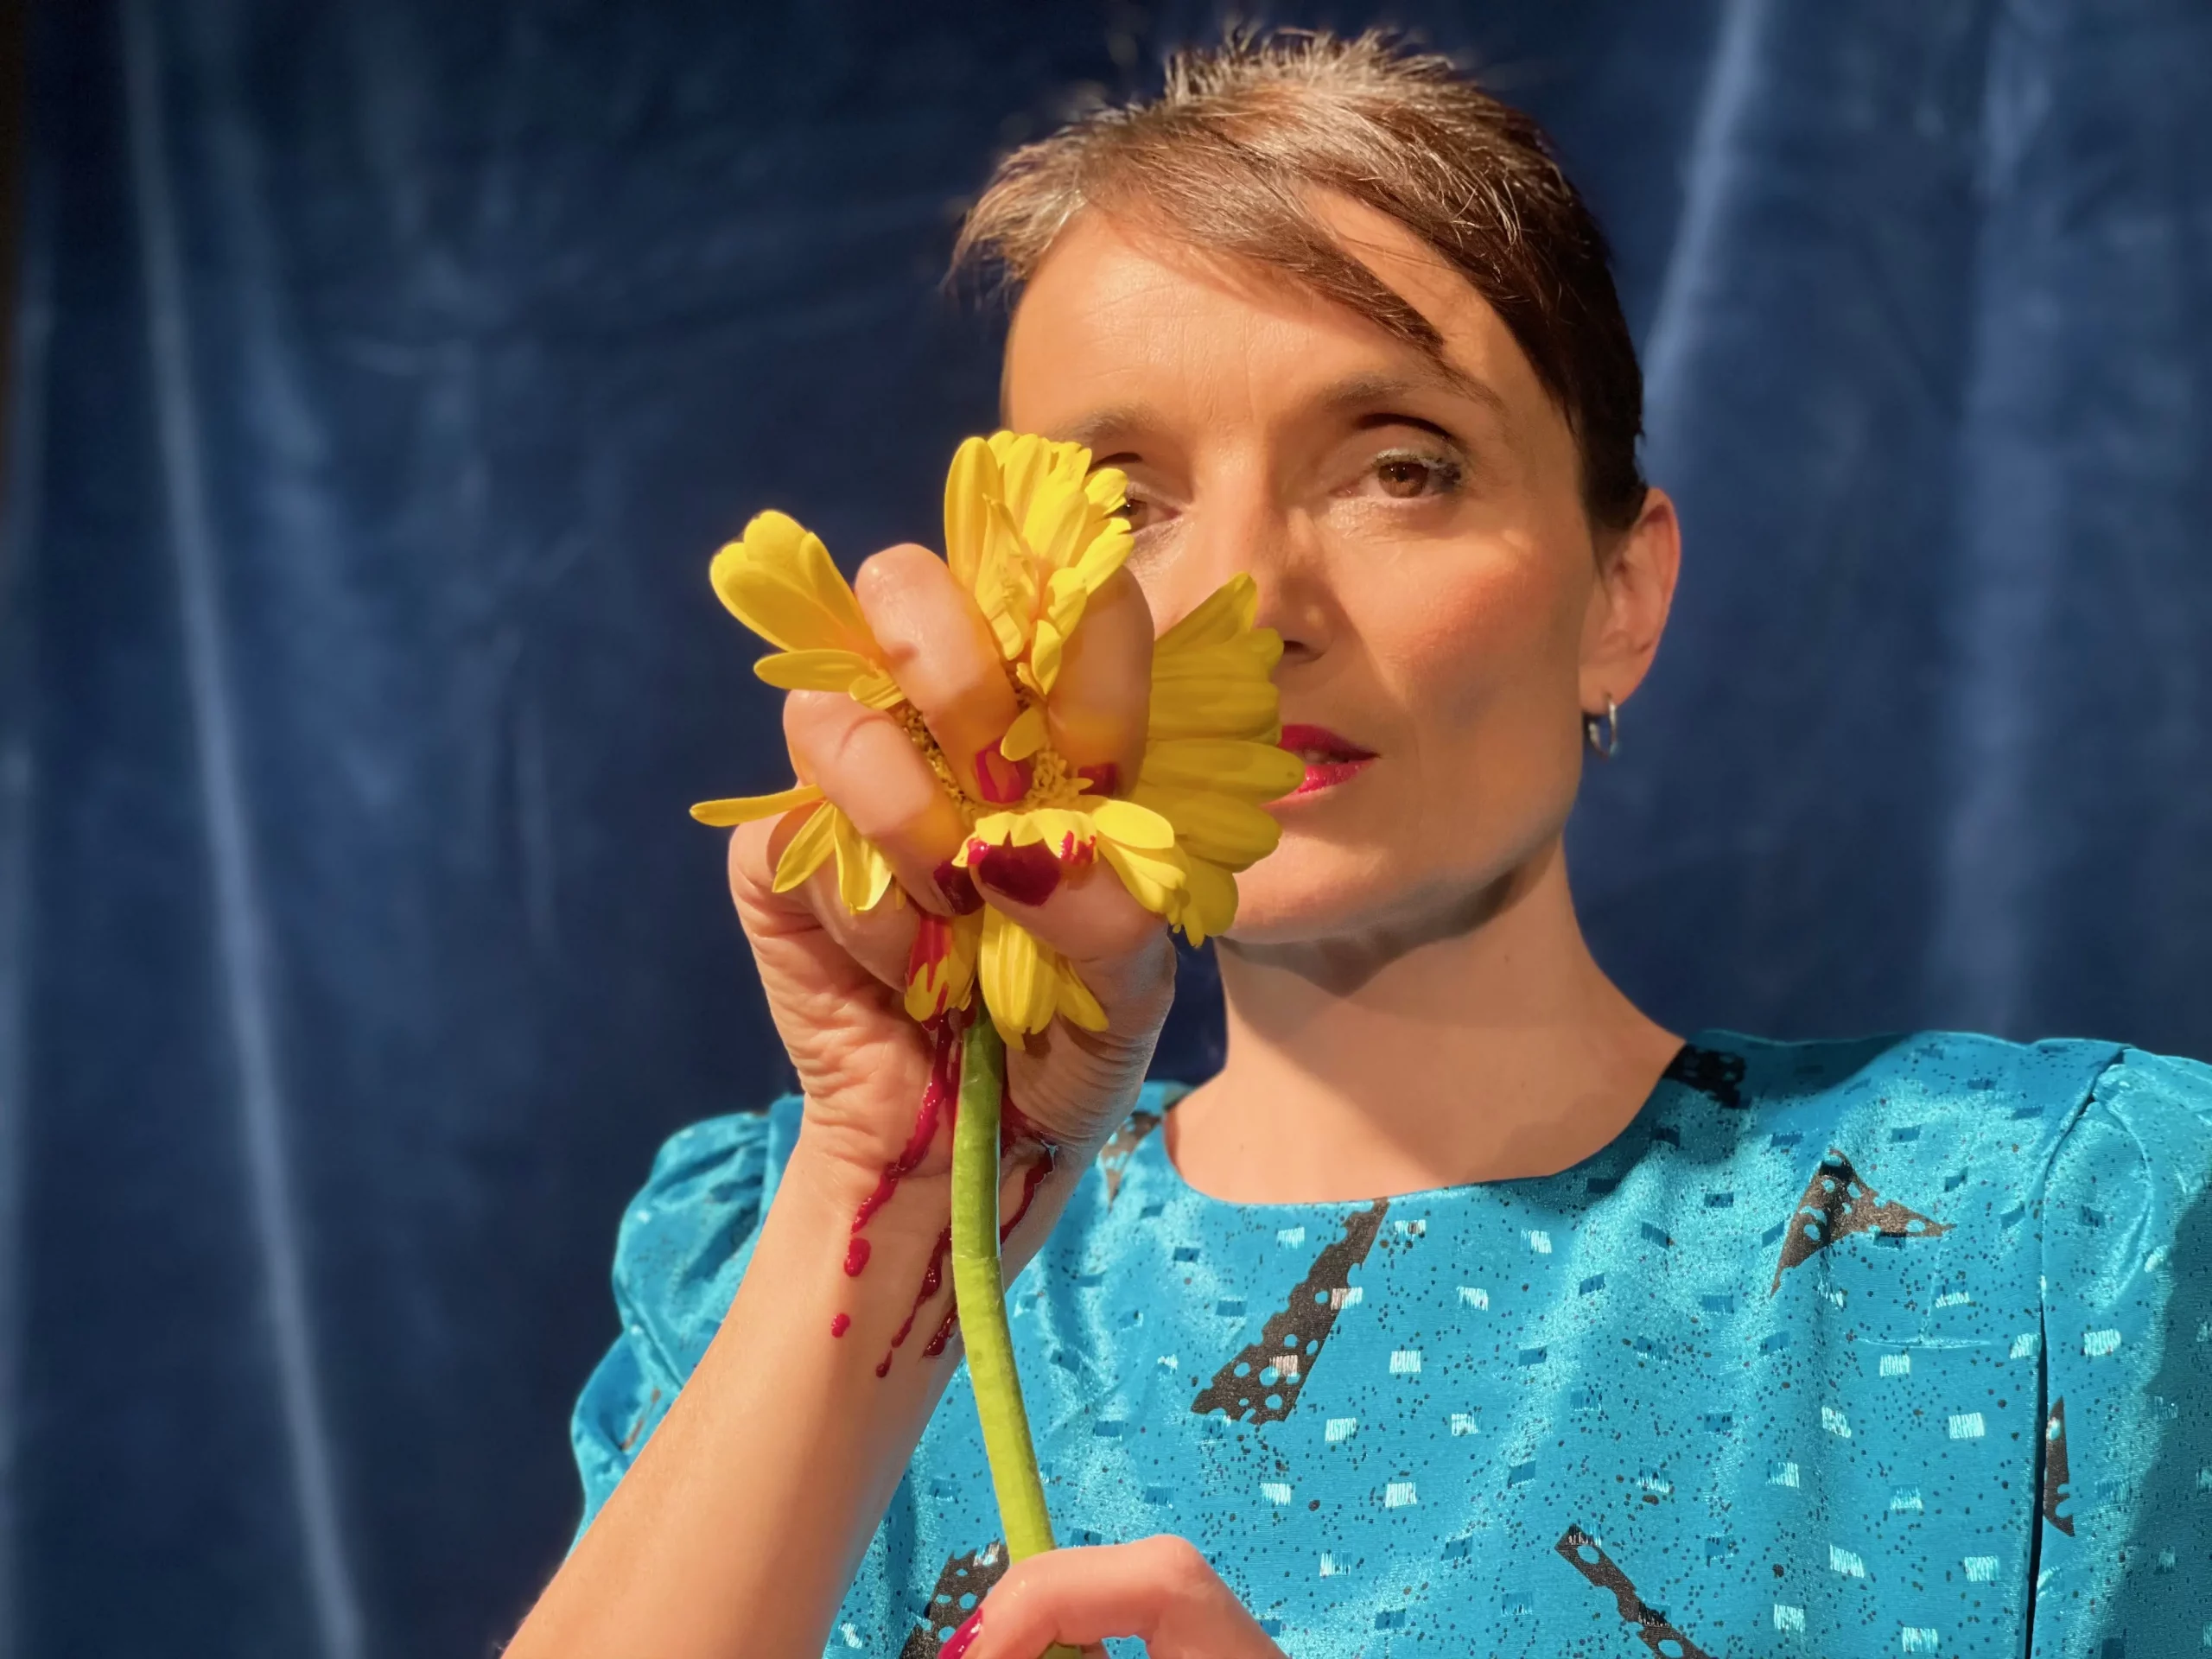 Sujetfoto "Wir töten Stella", Alice Schneider mit gelber Blume in der Hand